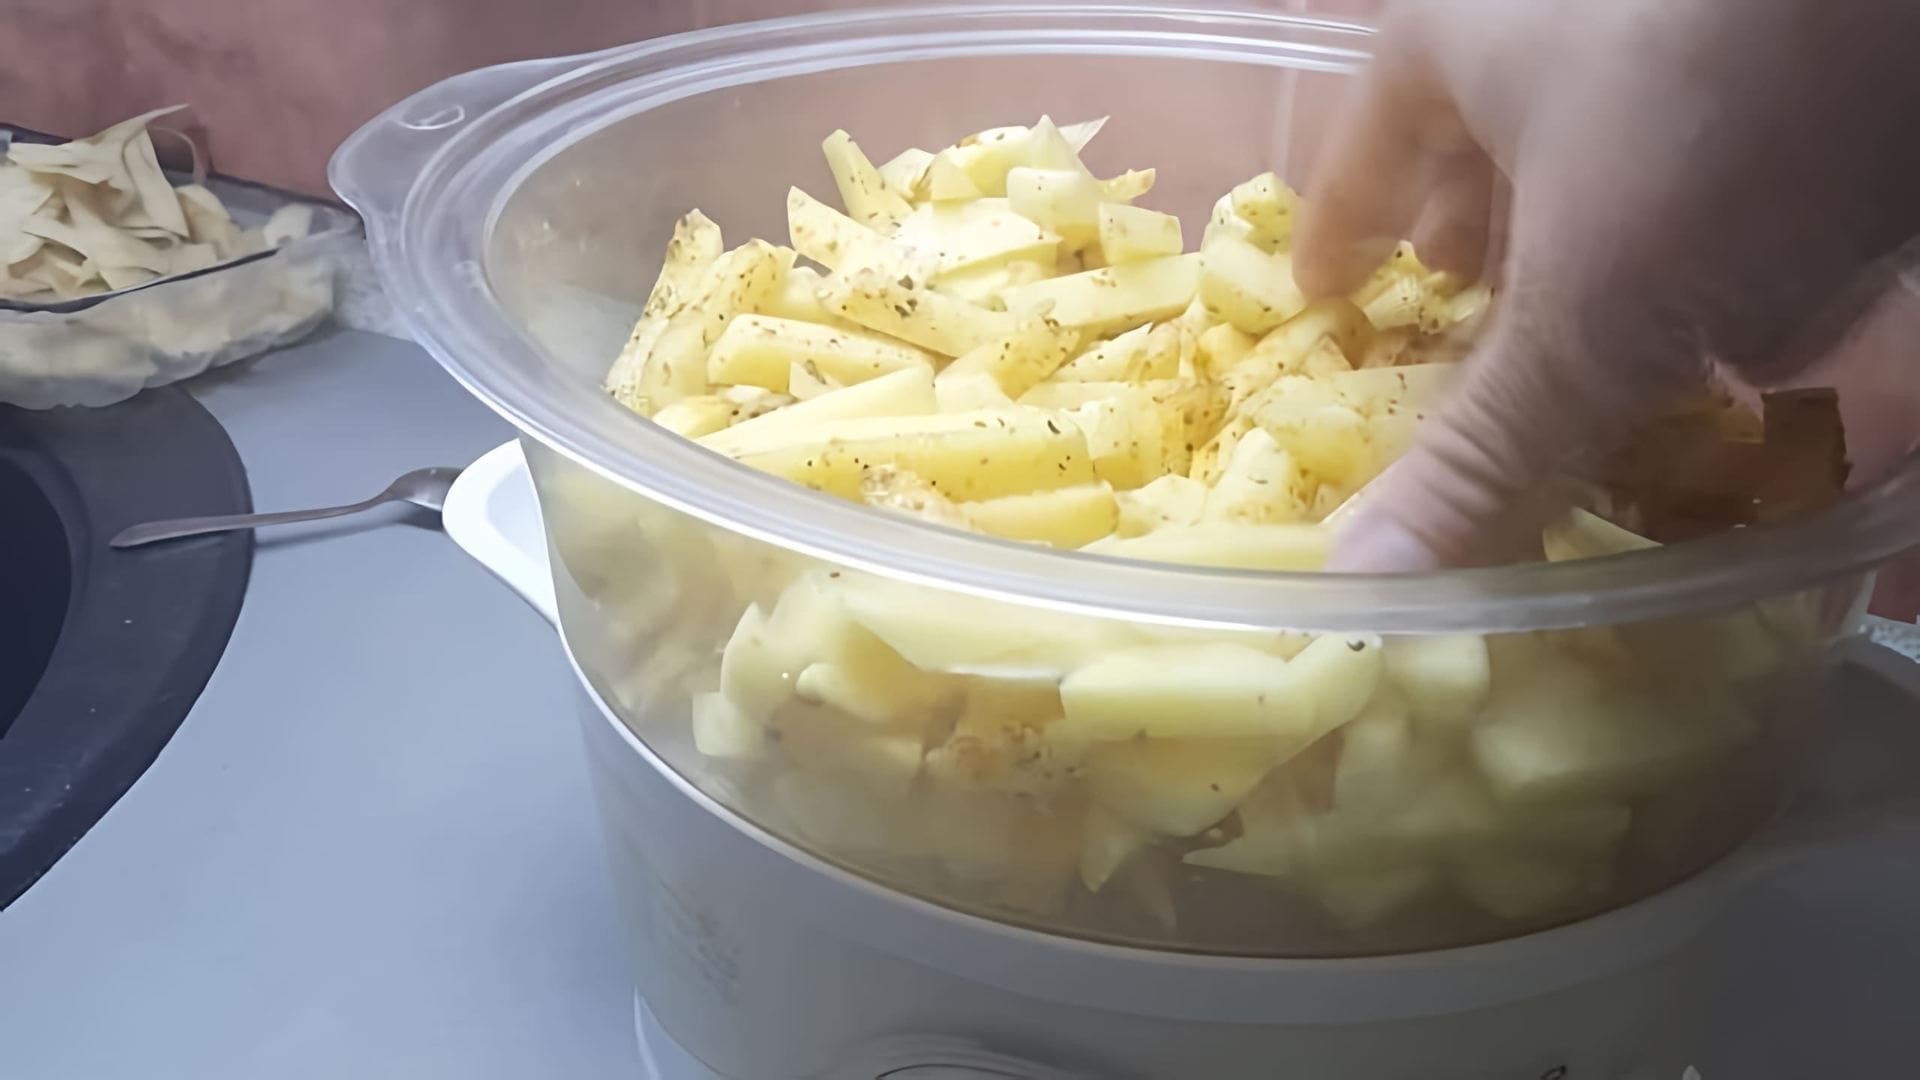 В этом видео демонстрируется процесс приготовления мяса и картошки в пароварке